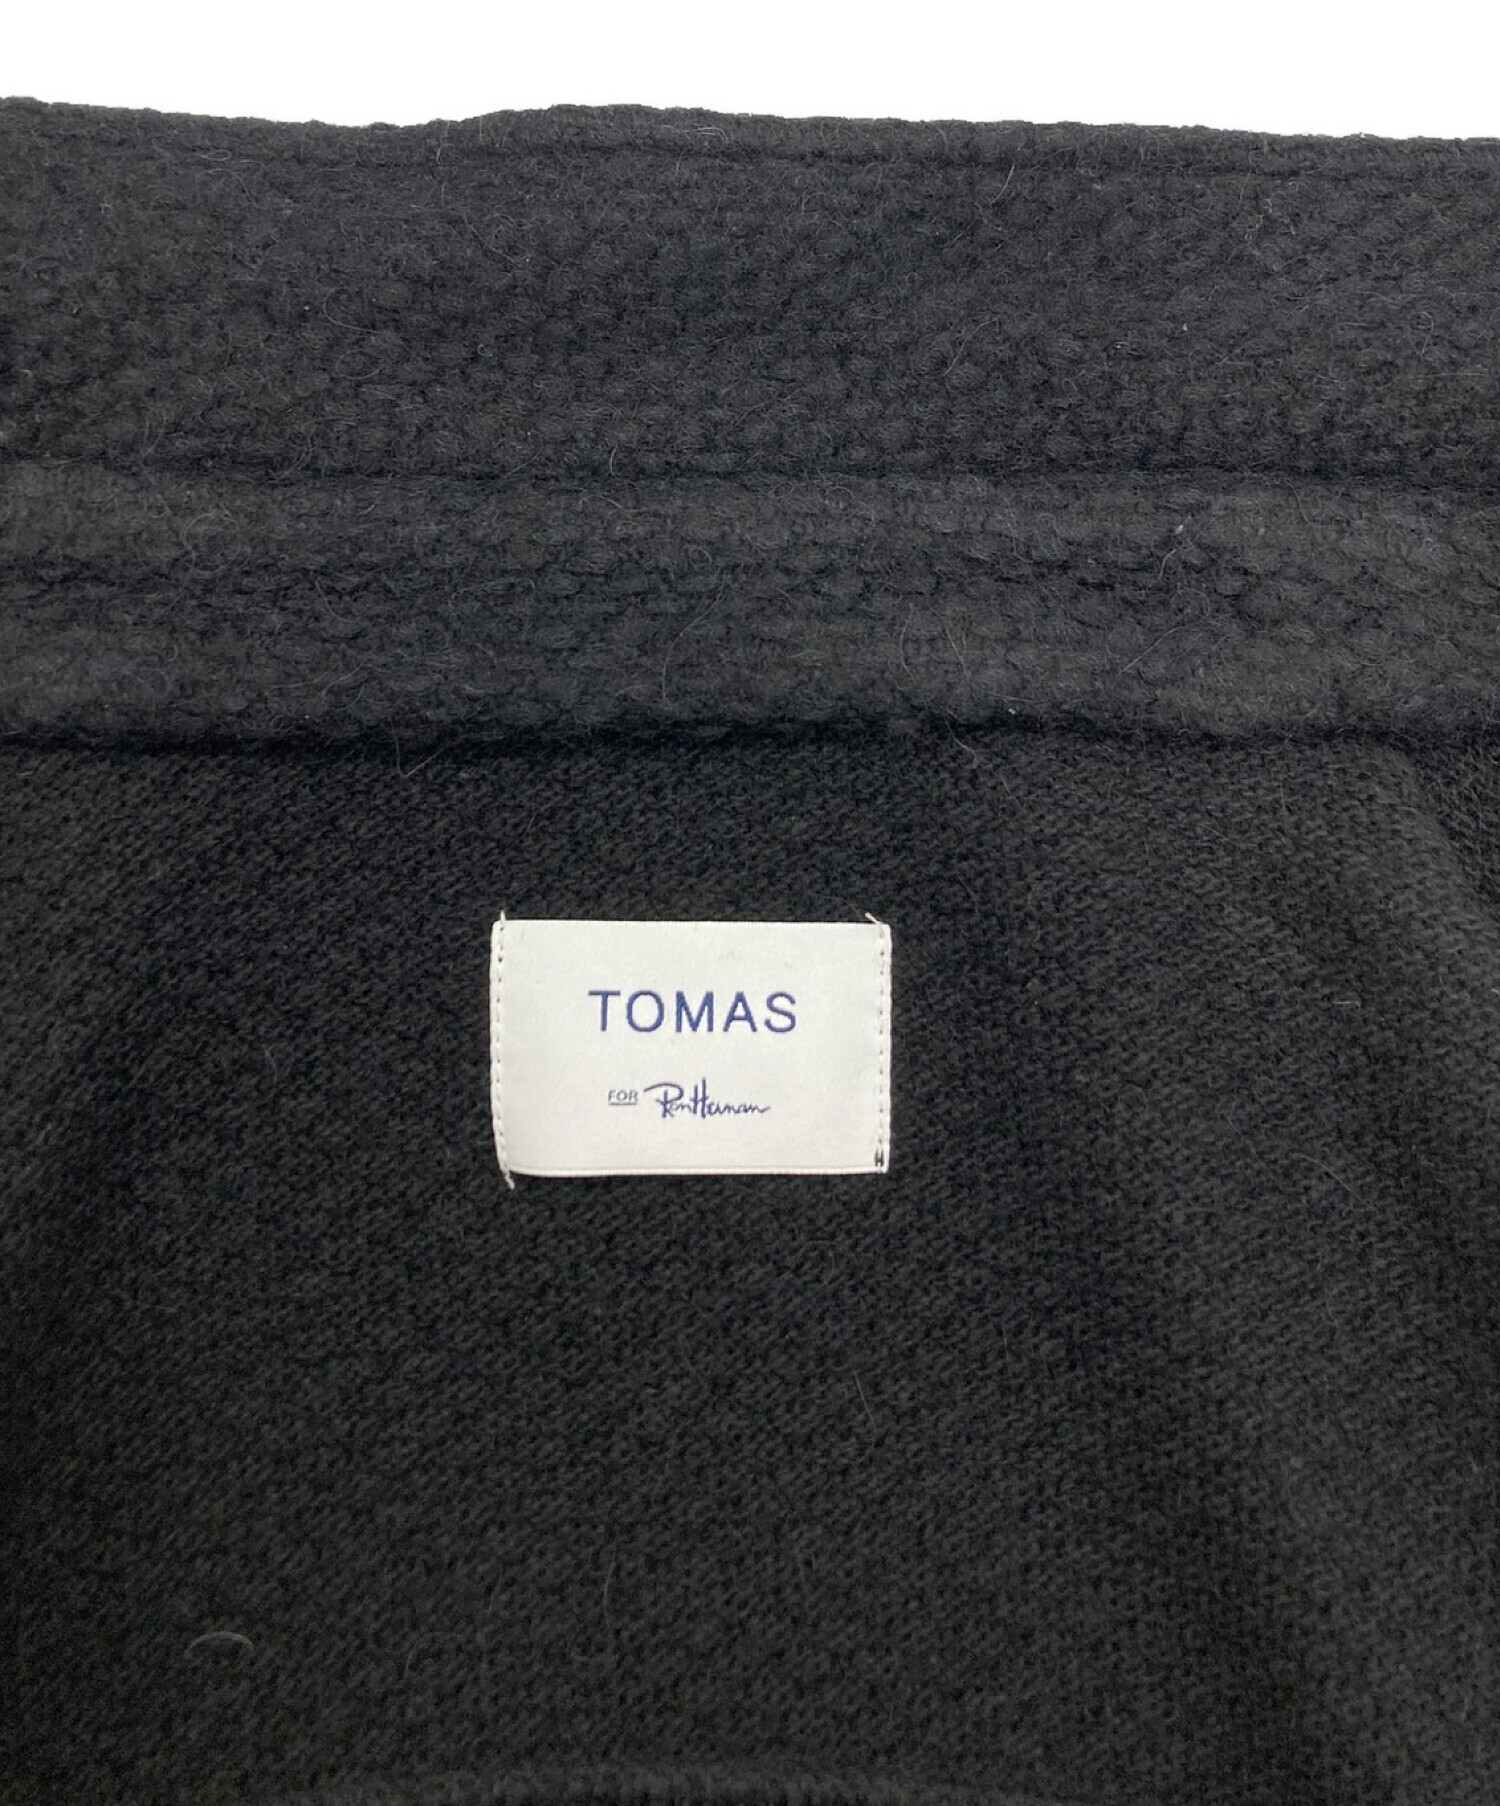 TOMAS (トーマス) Ron Herman (ロンハーマン) 別注ニットシャツジャケット ブラック サイズ:L